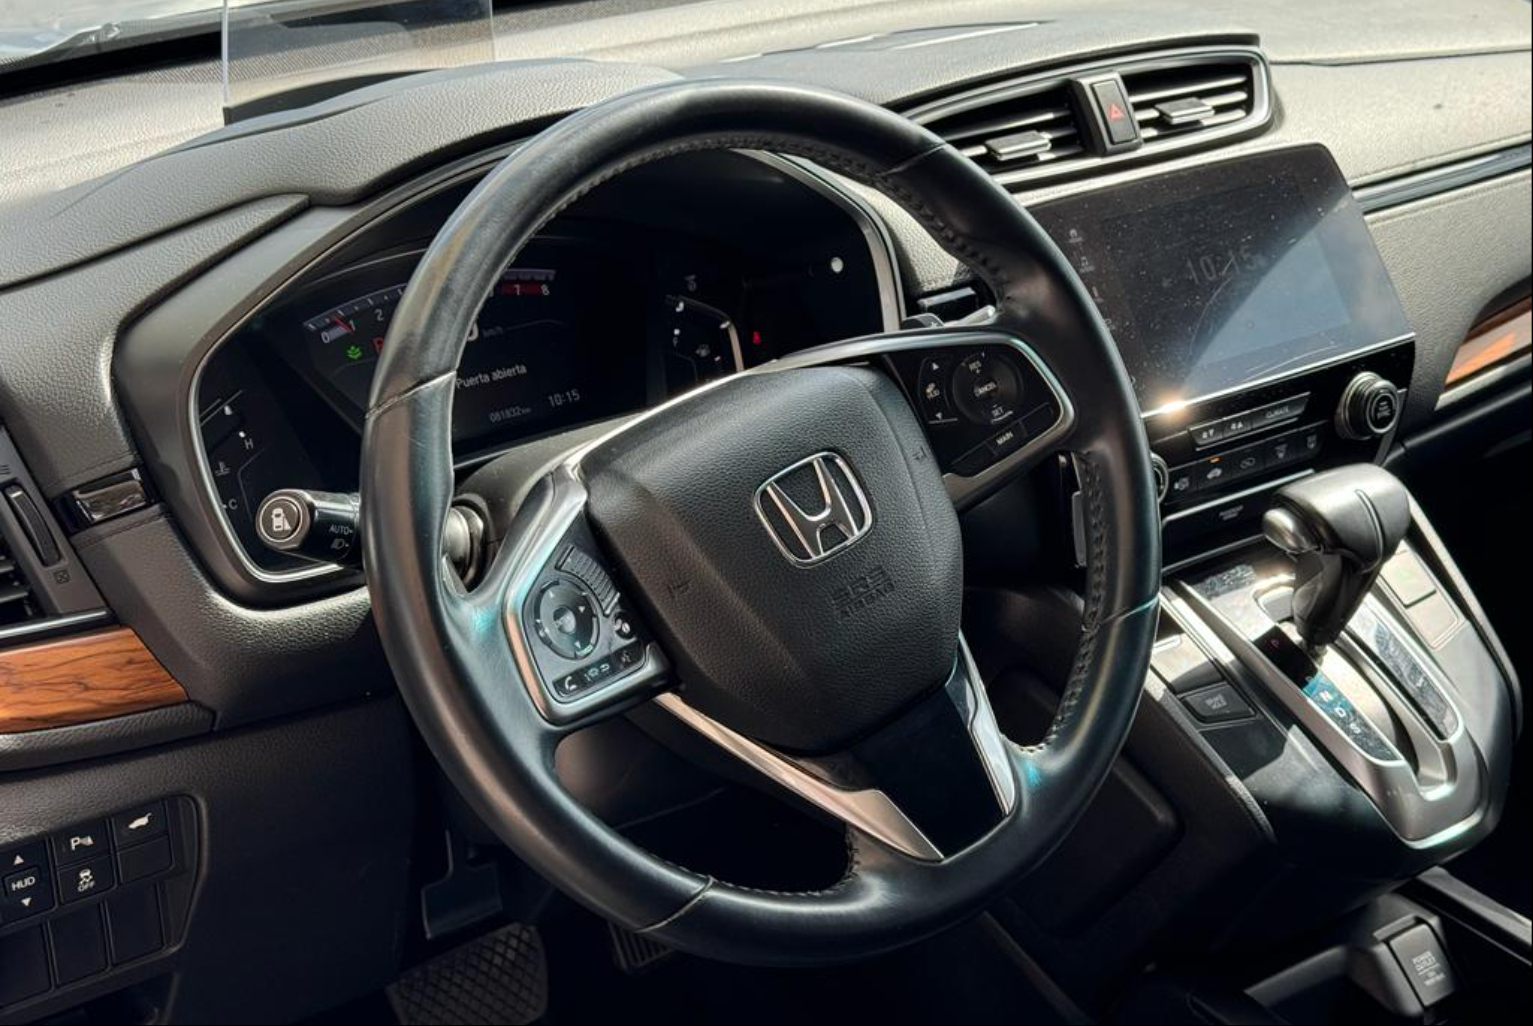 Honda CR-V 2018 Automático color Plateado, Imagen #11